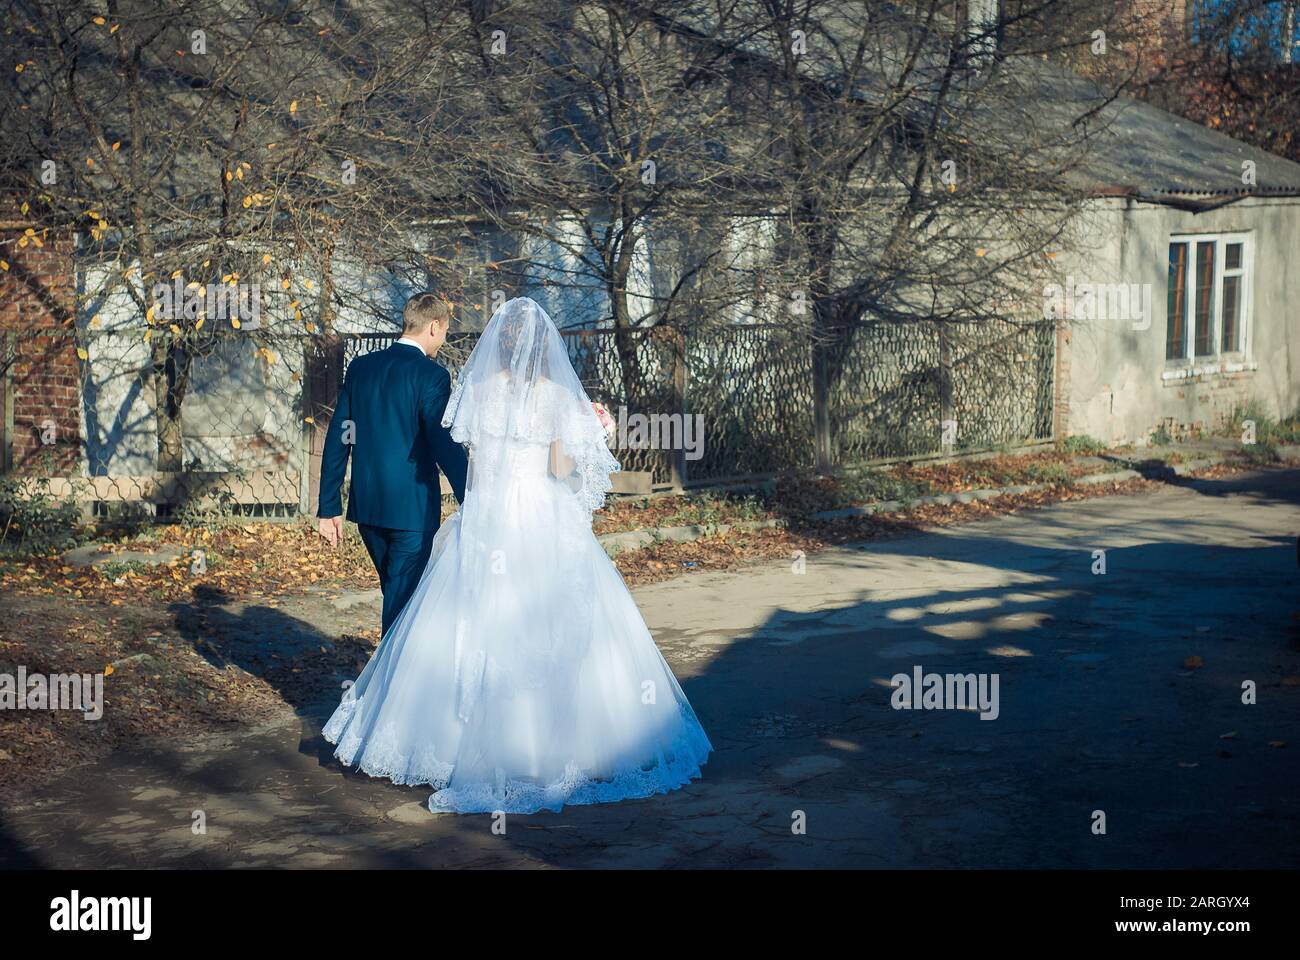 Ucraina, Lutsk - 27.10.2013: la cerimonia nuziale. Gli amanti delle passeggiate nella natura nel Parco. Bella delicata e coppie romantiche, amarsi Foto Stock